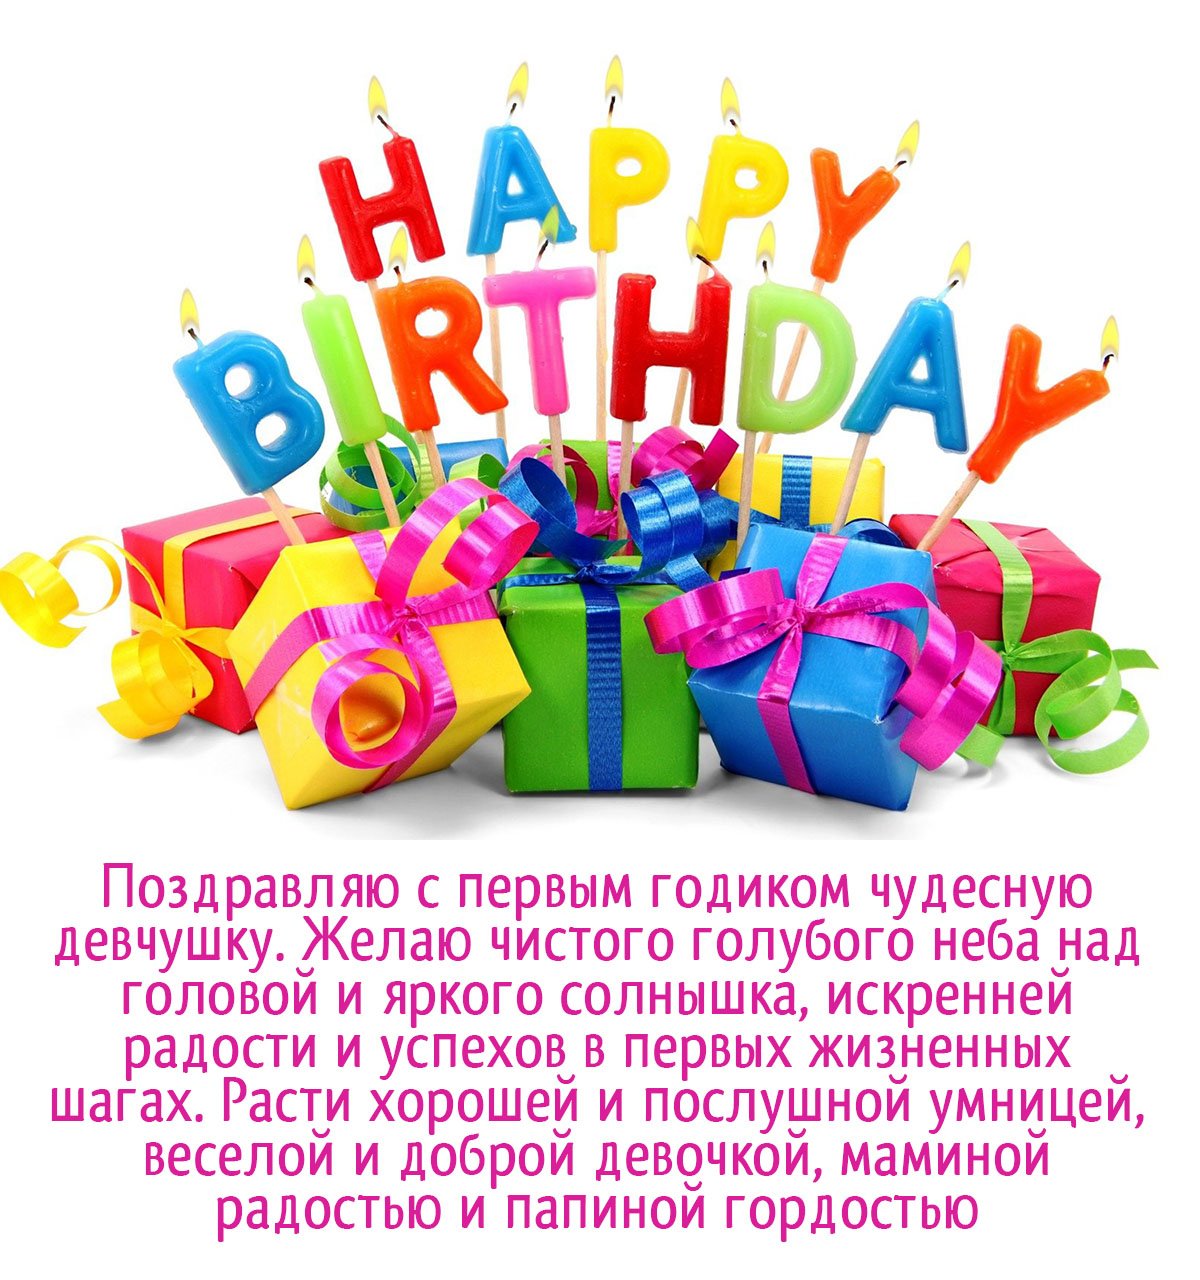 Поздравления с днем рождения на казахском языке прикольные в стихах и прозе